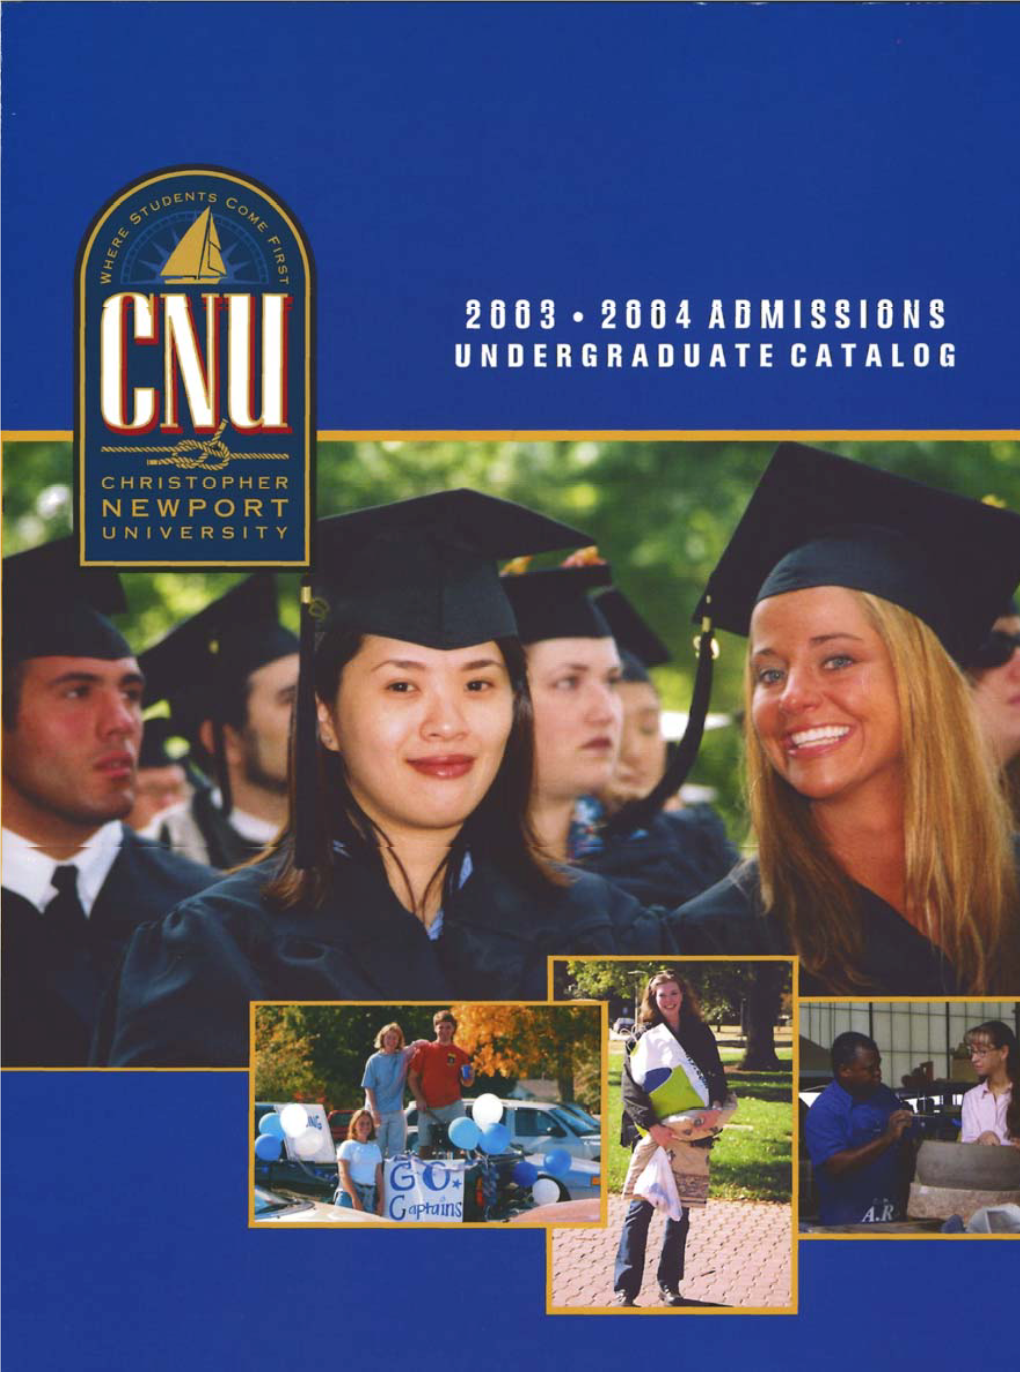 Undergraduate Catalog